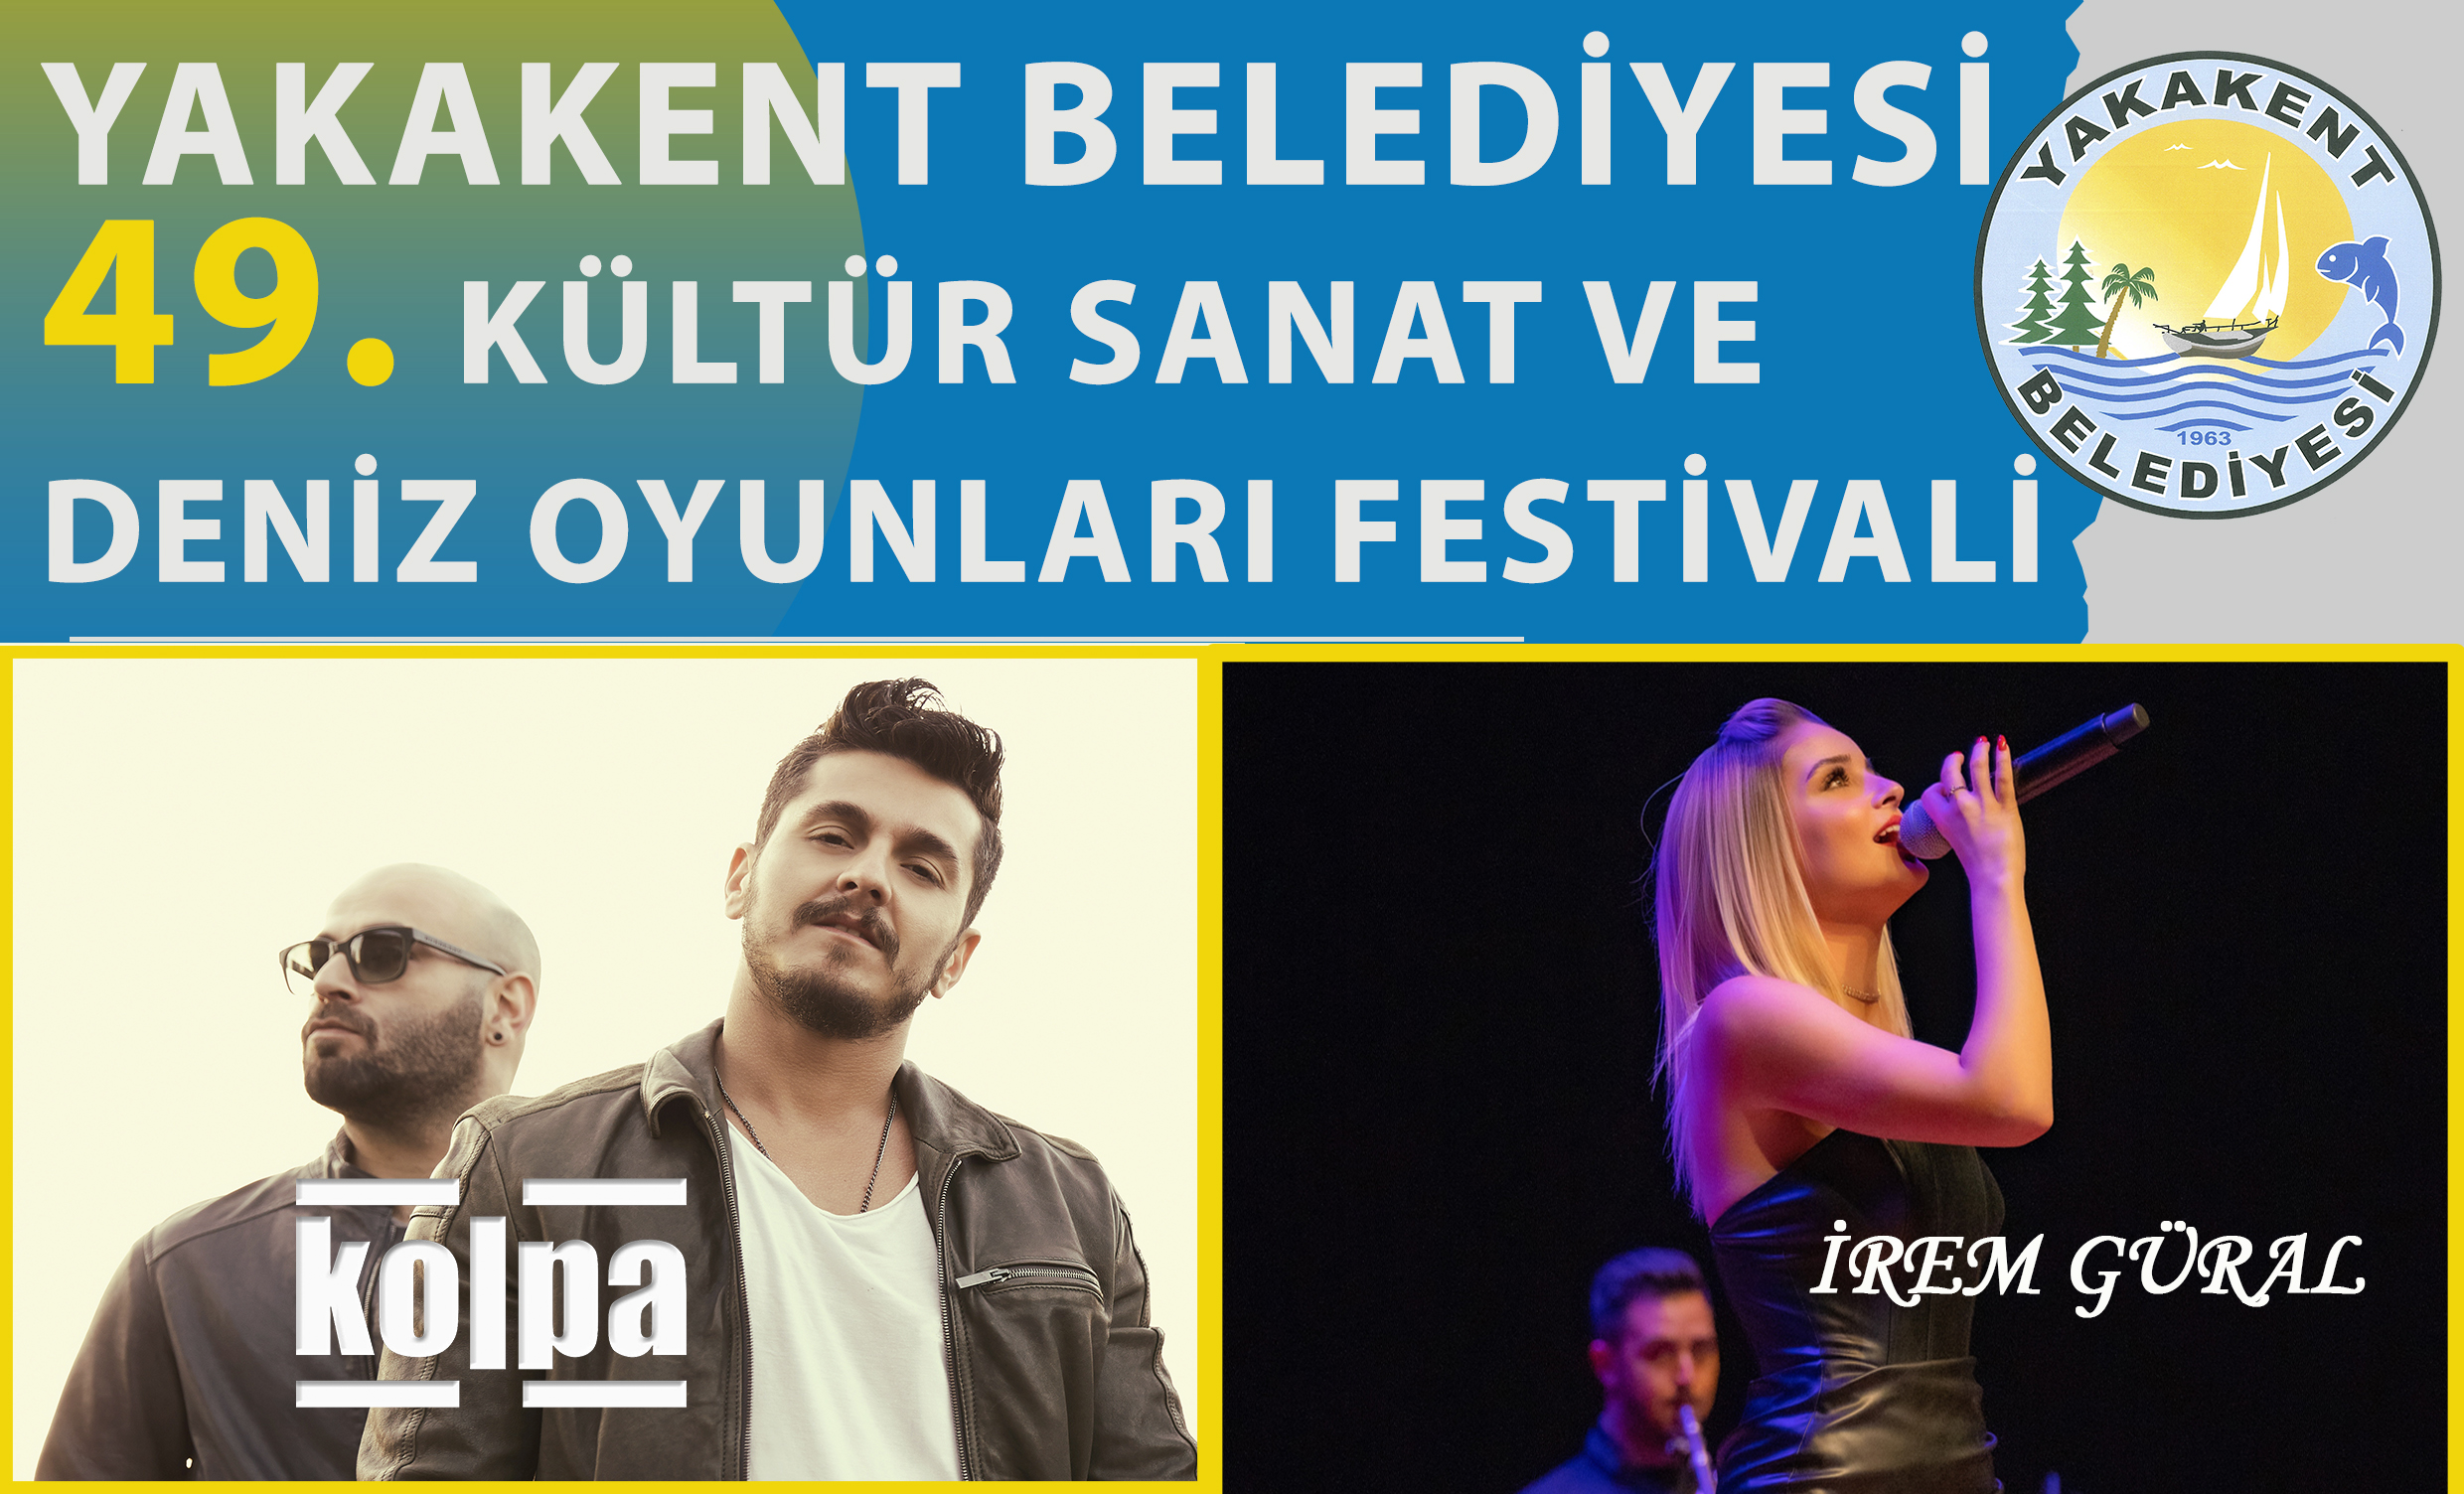 “Yakakent Belediyesi Kültür Sanat ve Deniz Oyunları Festivali” 8-9 Temmuz tarihleri arasında başlıyor.